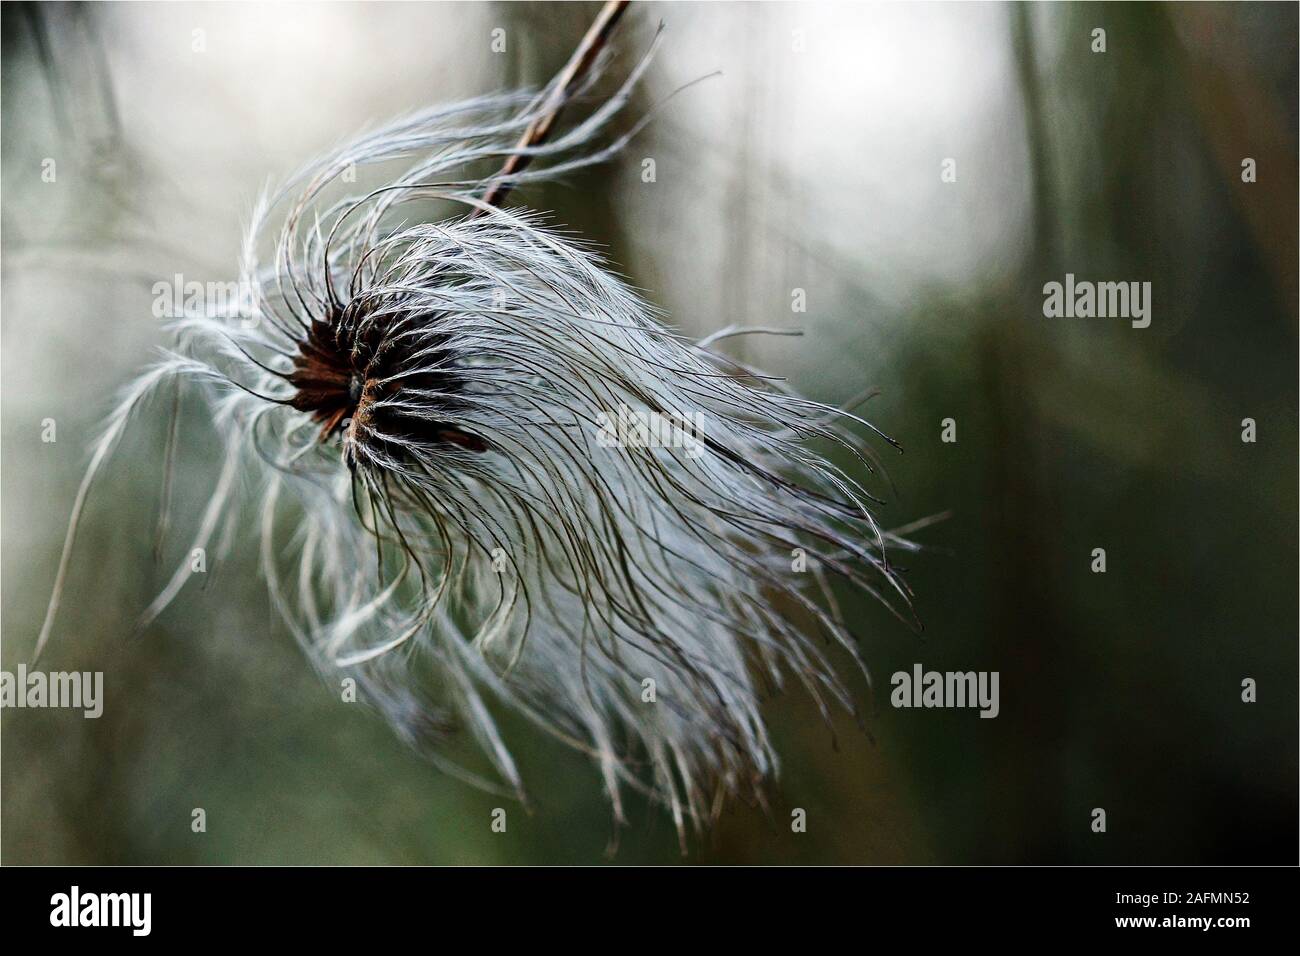 Questo seme head è come uno strano animale con la sua criniera al vento. Foto Stock